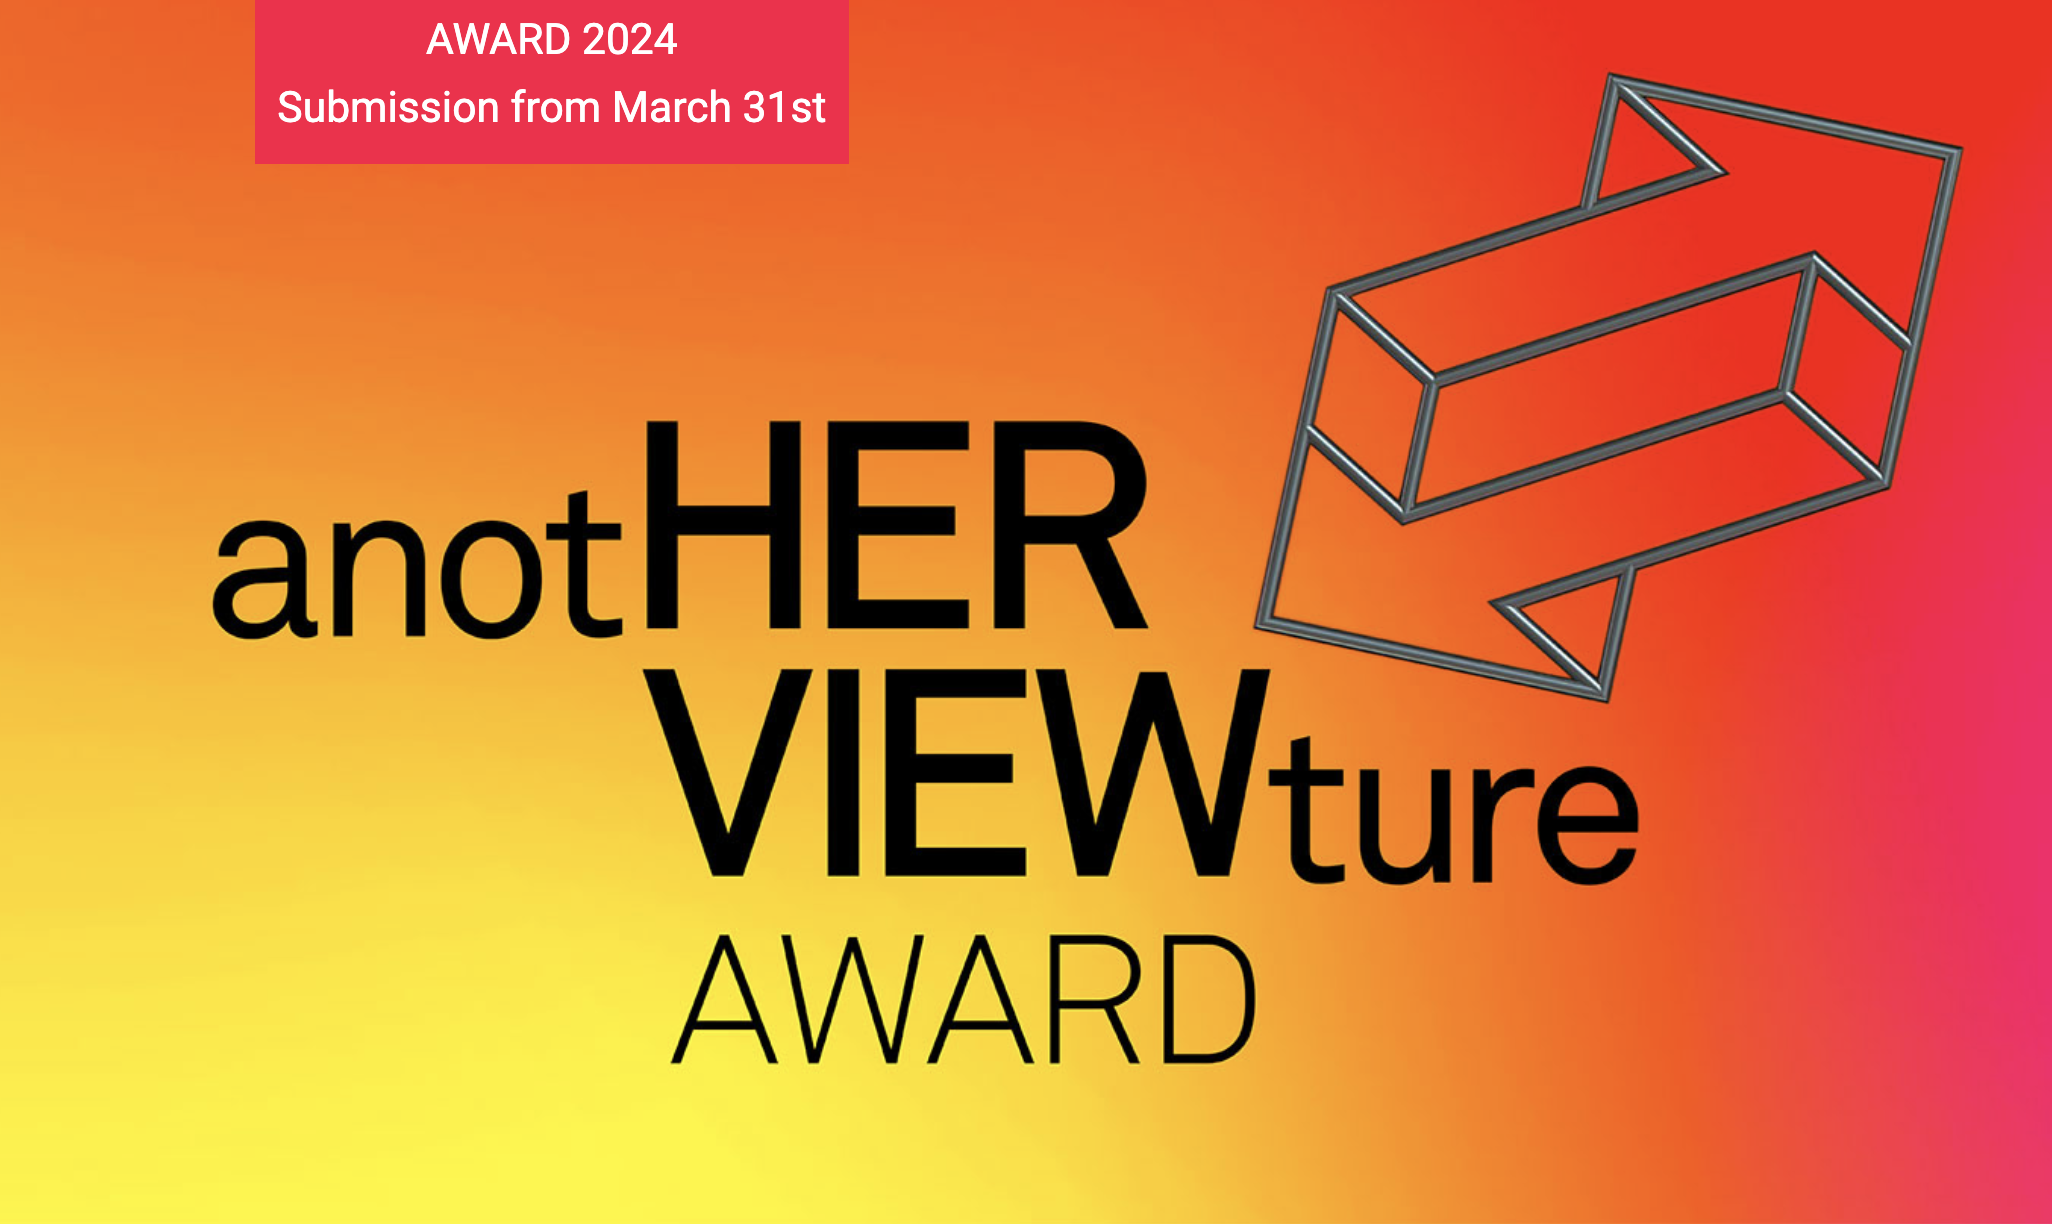 anotHERVIEWture Award, © anotHERVIEWture Award, Photographer: anotHERVIEWture Award